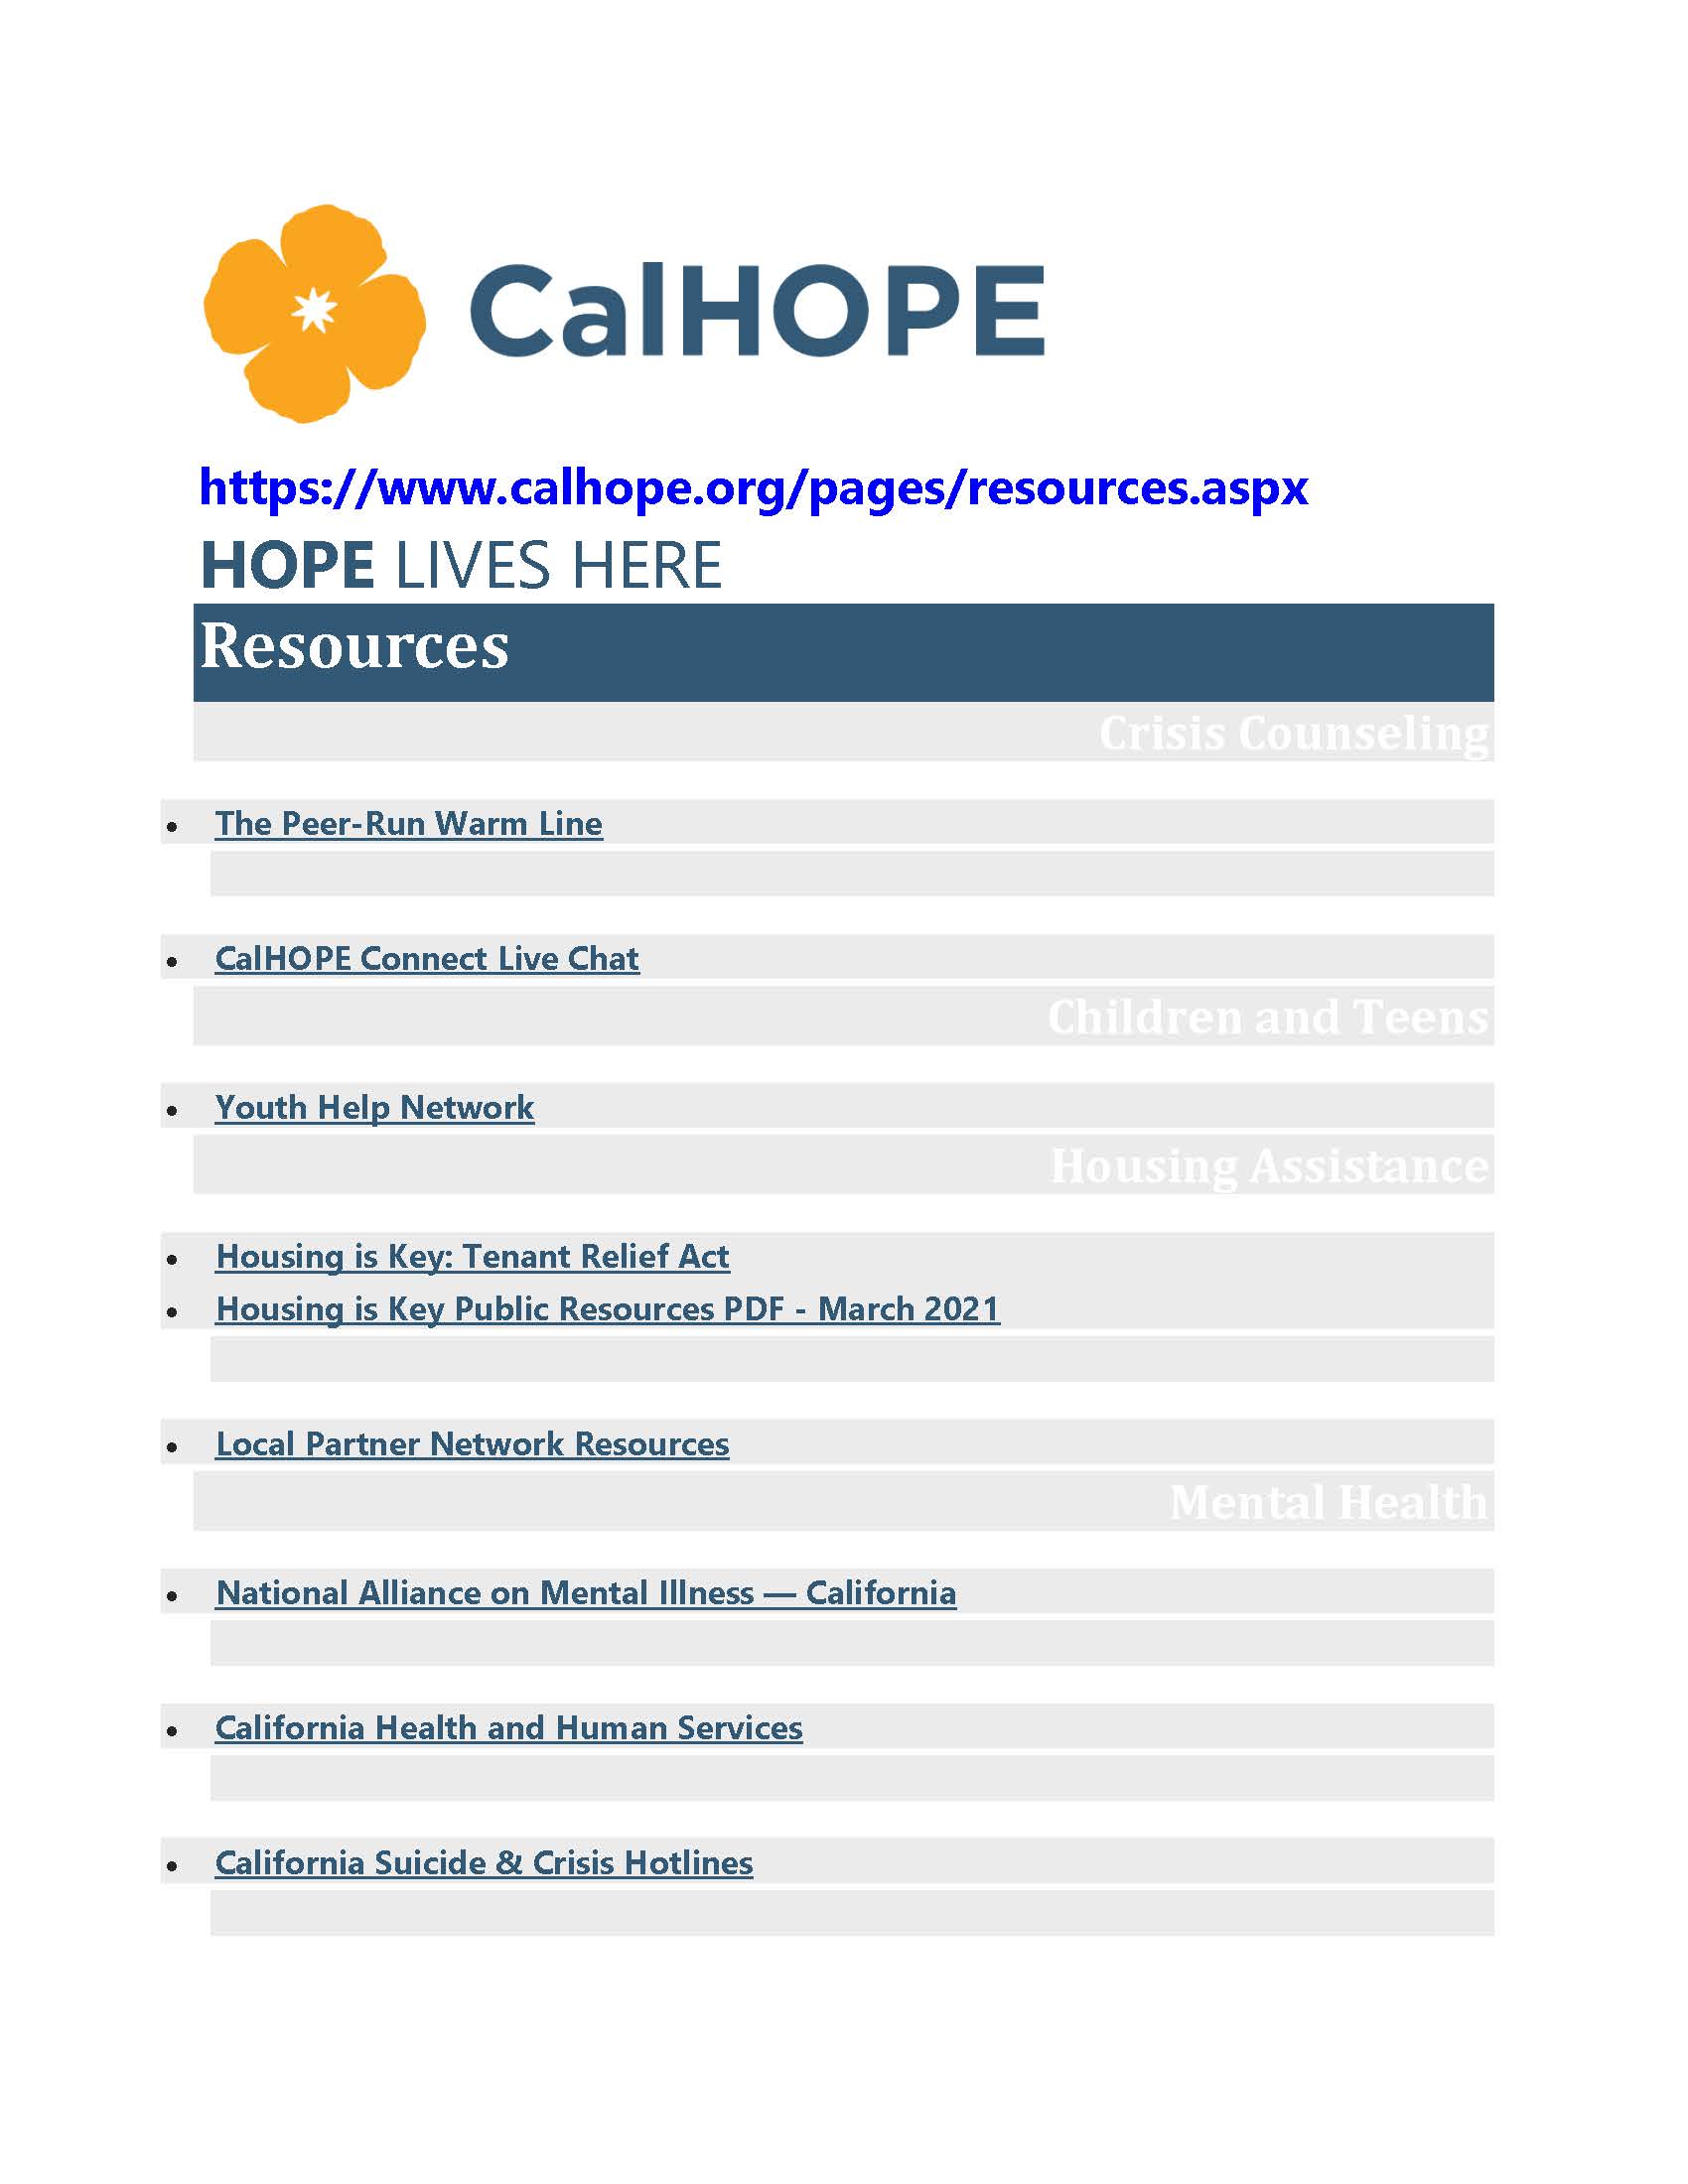 CalHope document thumbnail image